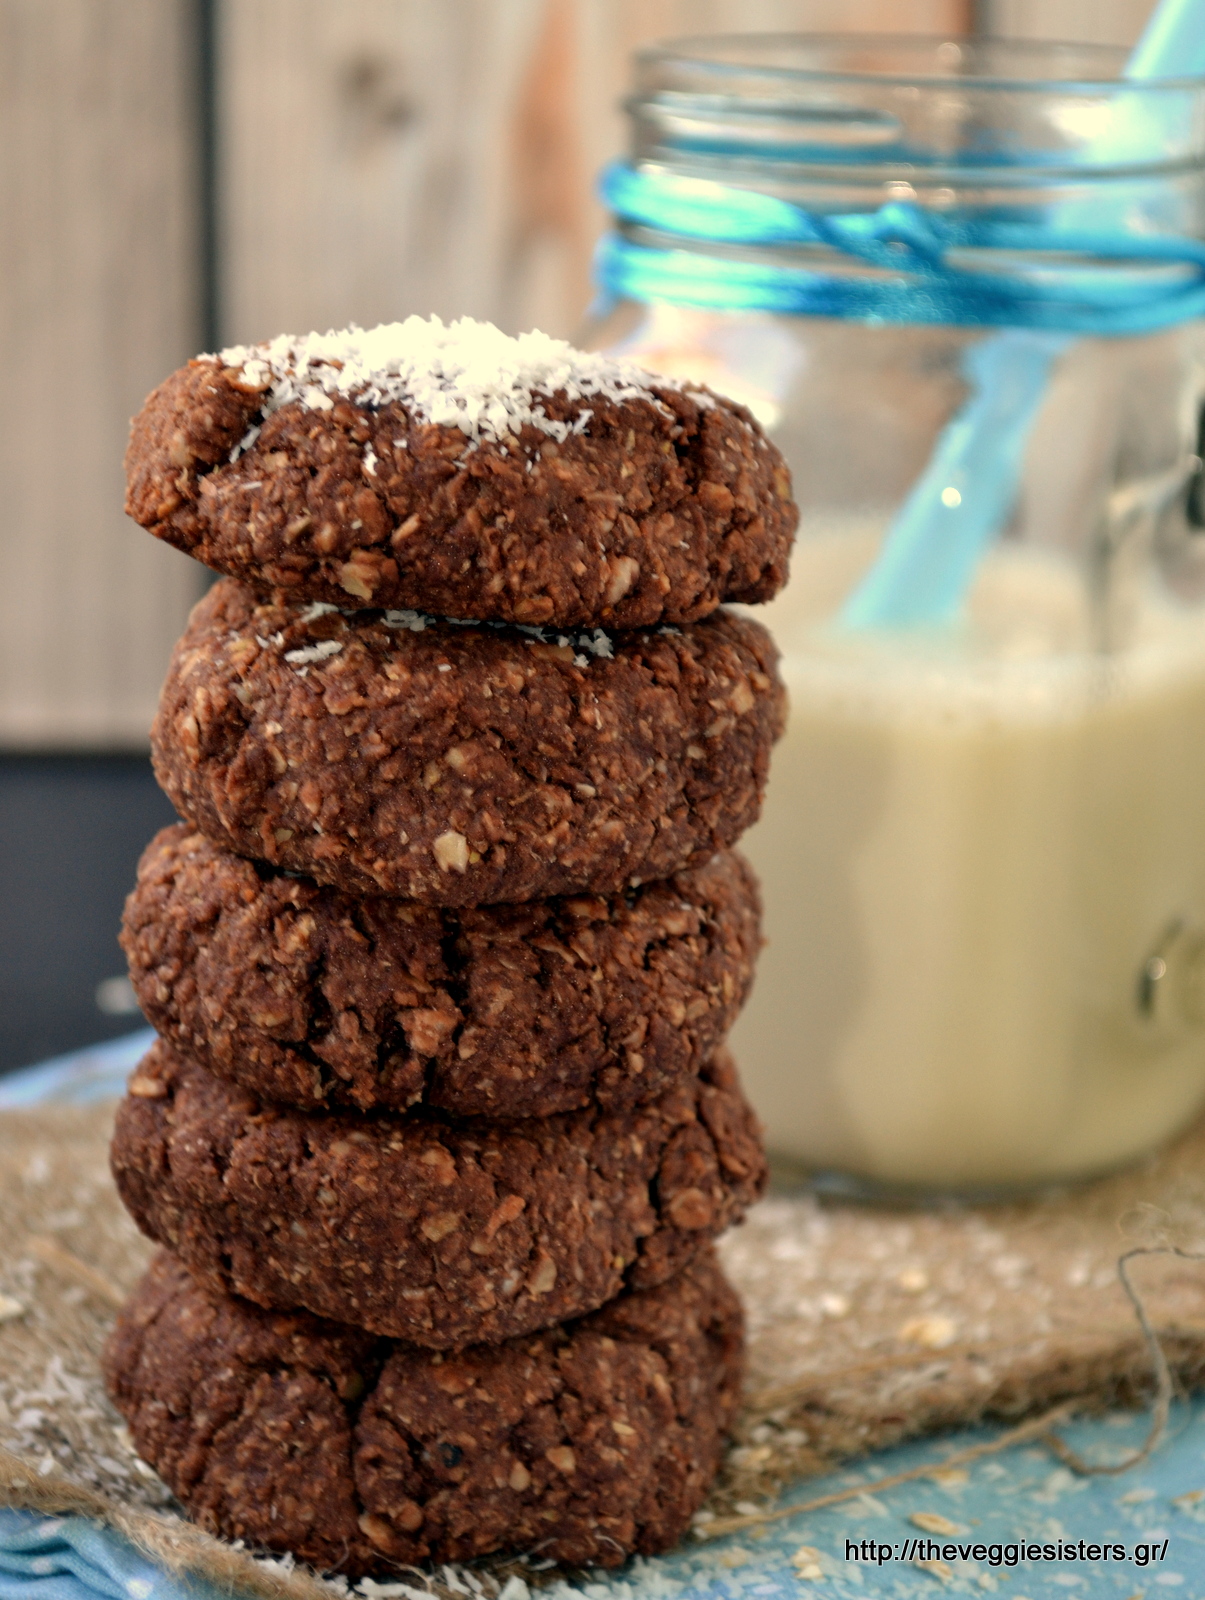 Μπισκότα με σοκολατένιο ταχίνι, βρώμη κ καρύδα - Chocolate tahini coconut oat cookies